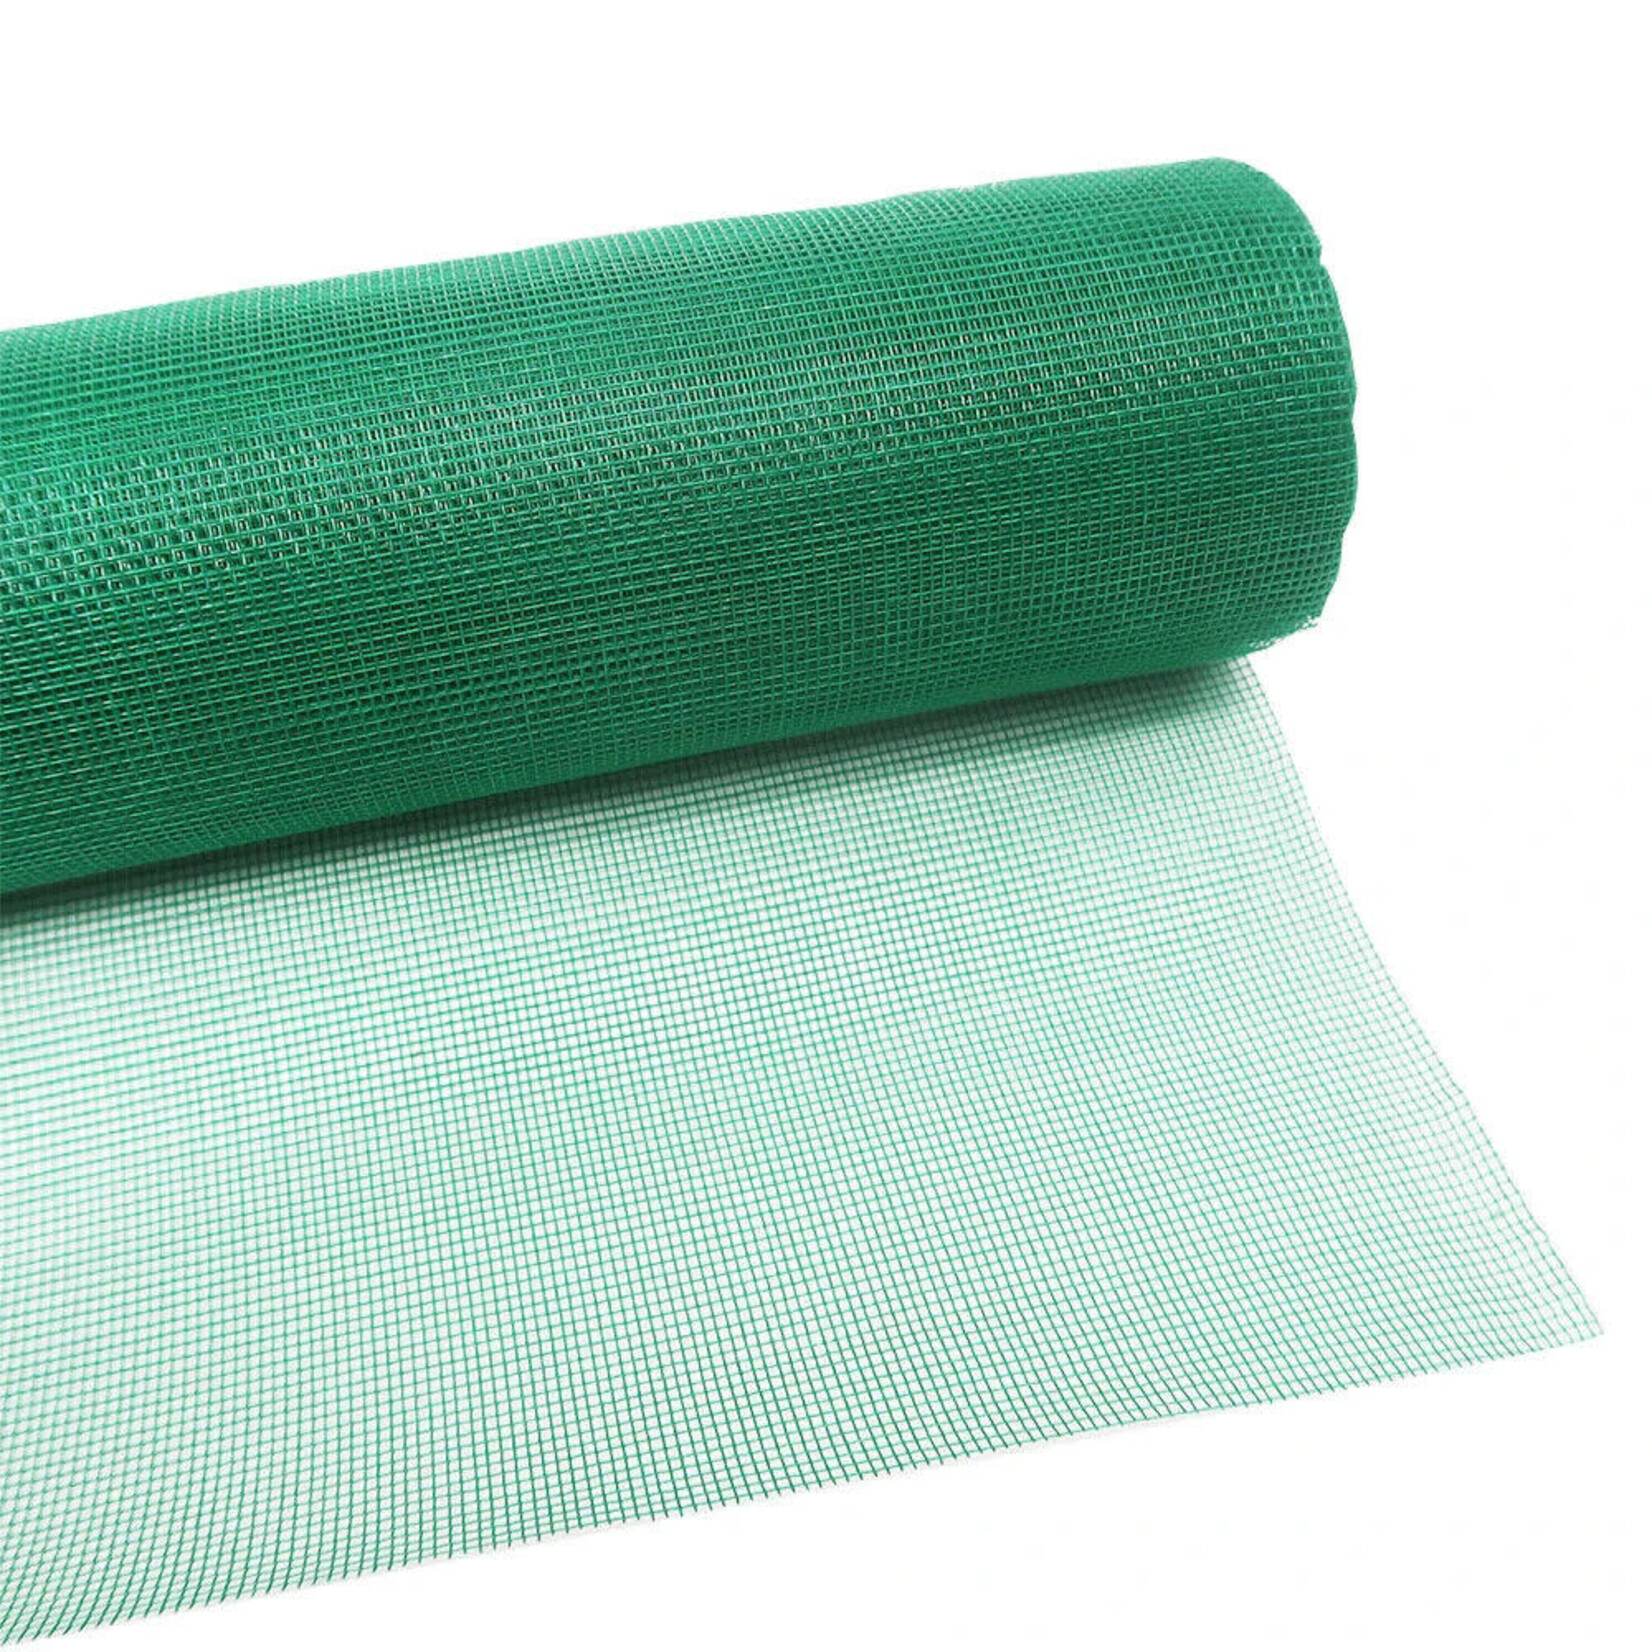 BuildSmart Self Adhesive Alkaline Resistant Fiberglass Wall Mesh 165 G/mÂ²(Â±5G) 5mmx5mm 1.195x50m (green)